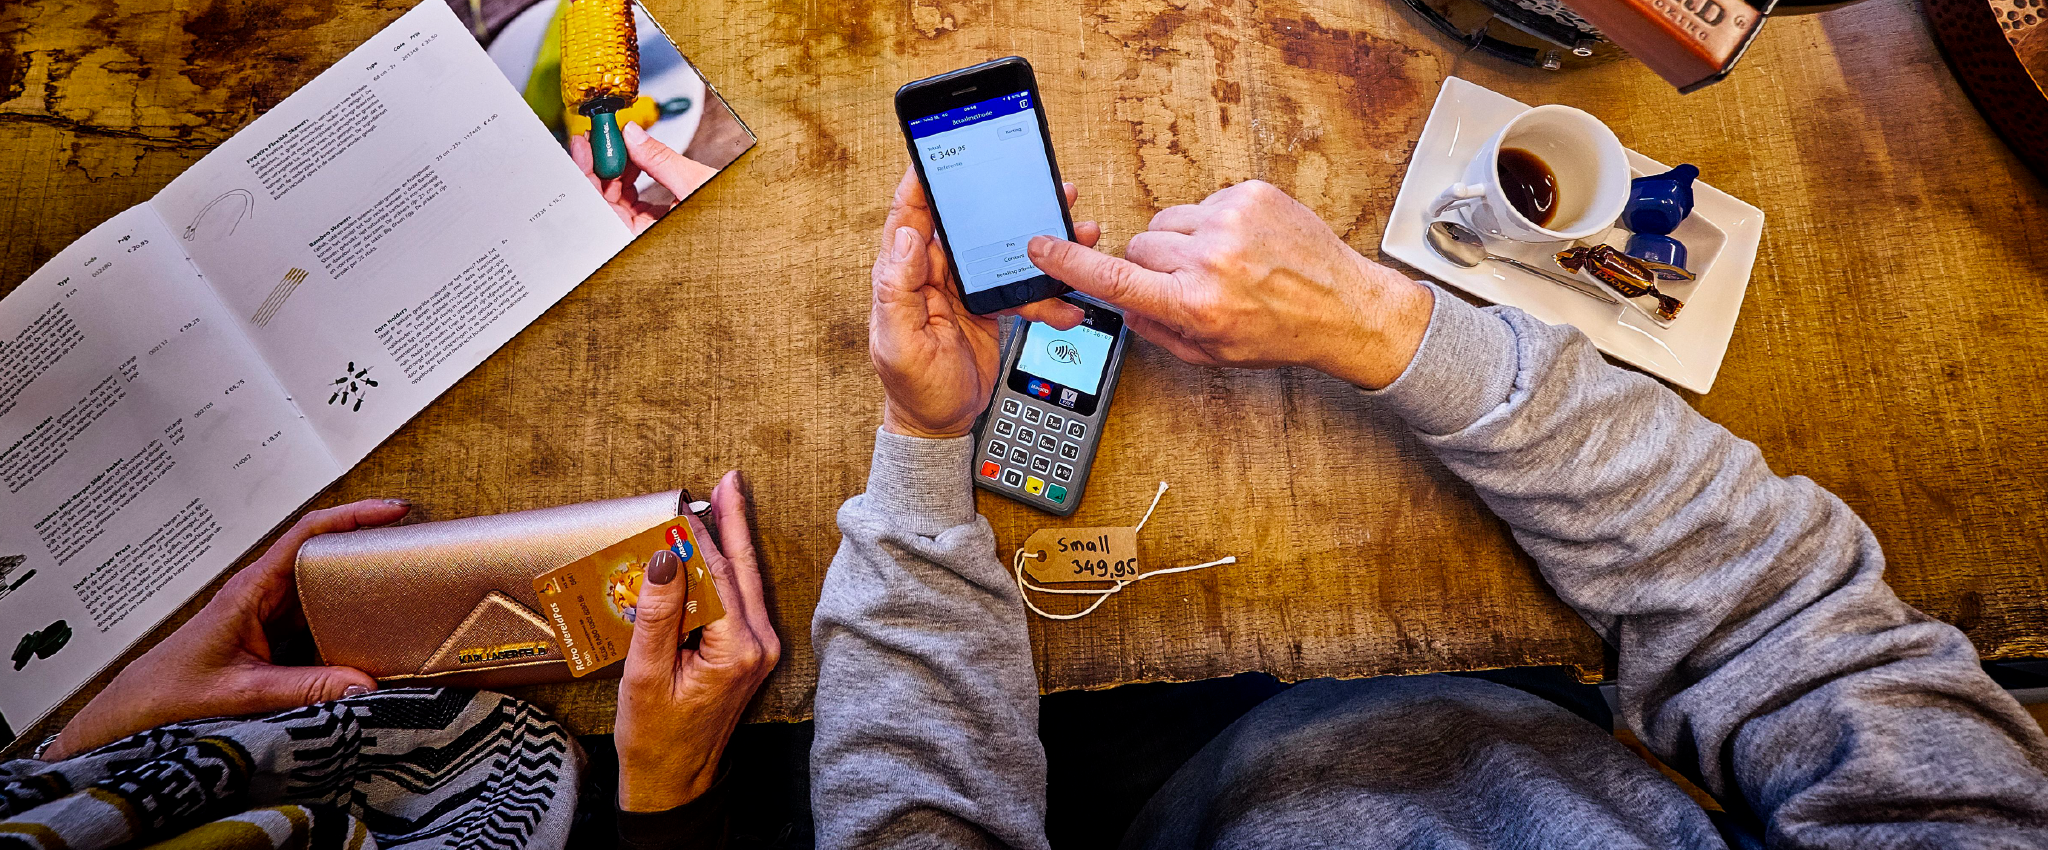 aankunnen Scepticisme Oraal Rabo SmartPin: maak van je smartphone een pinautomaat | Ikgastarten